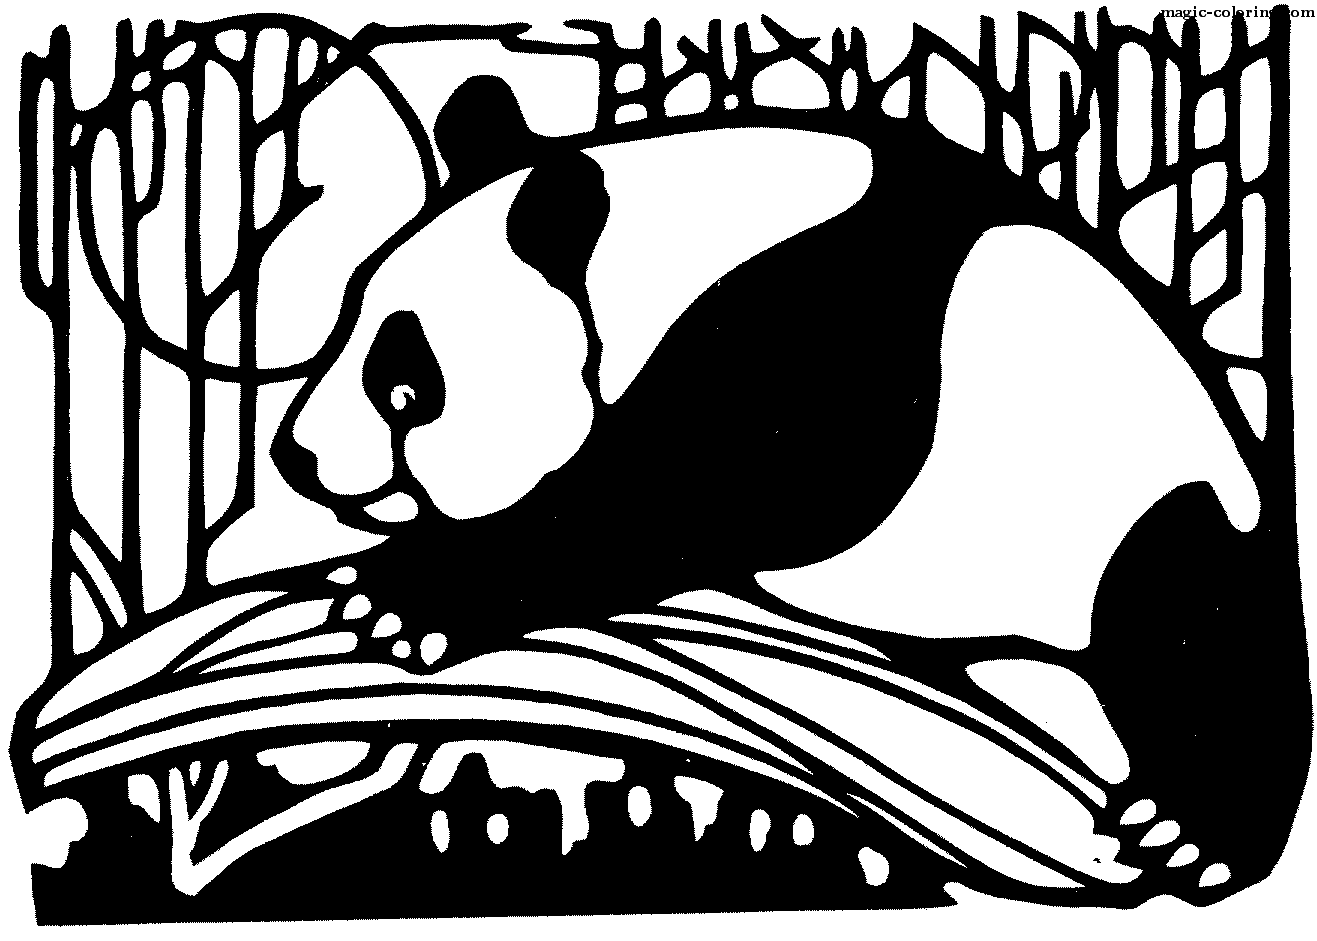 Laying Panda